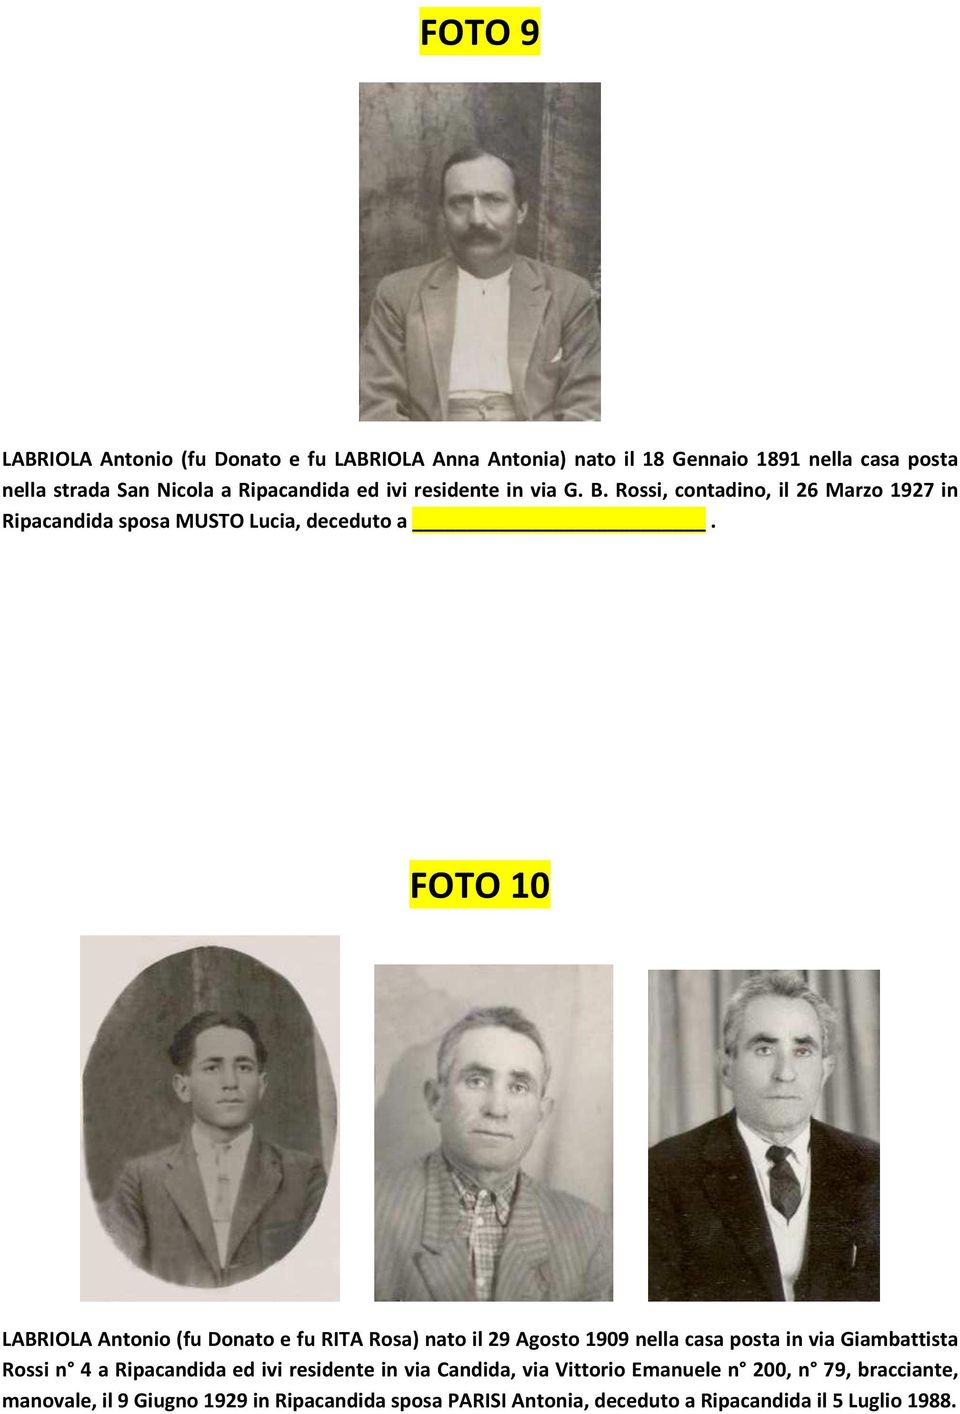 FOTO 10 LABRIOLA Antonio (fu Donato e fu RITA Rosa) nato il 29 Agosto 1909 nella casa posta in via Giambattista Rossi n 4 a Ripacandida ed ivi